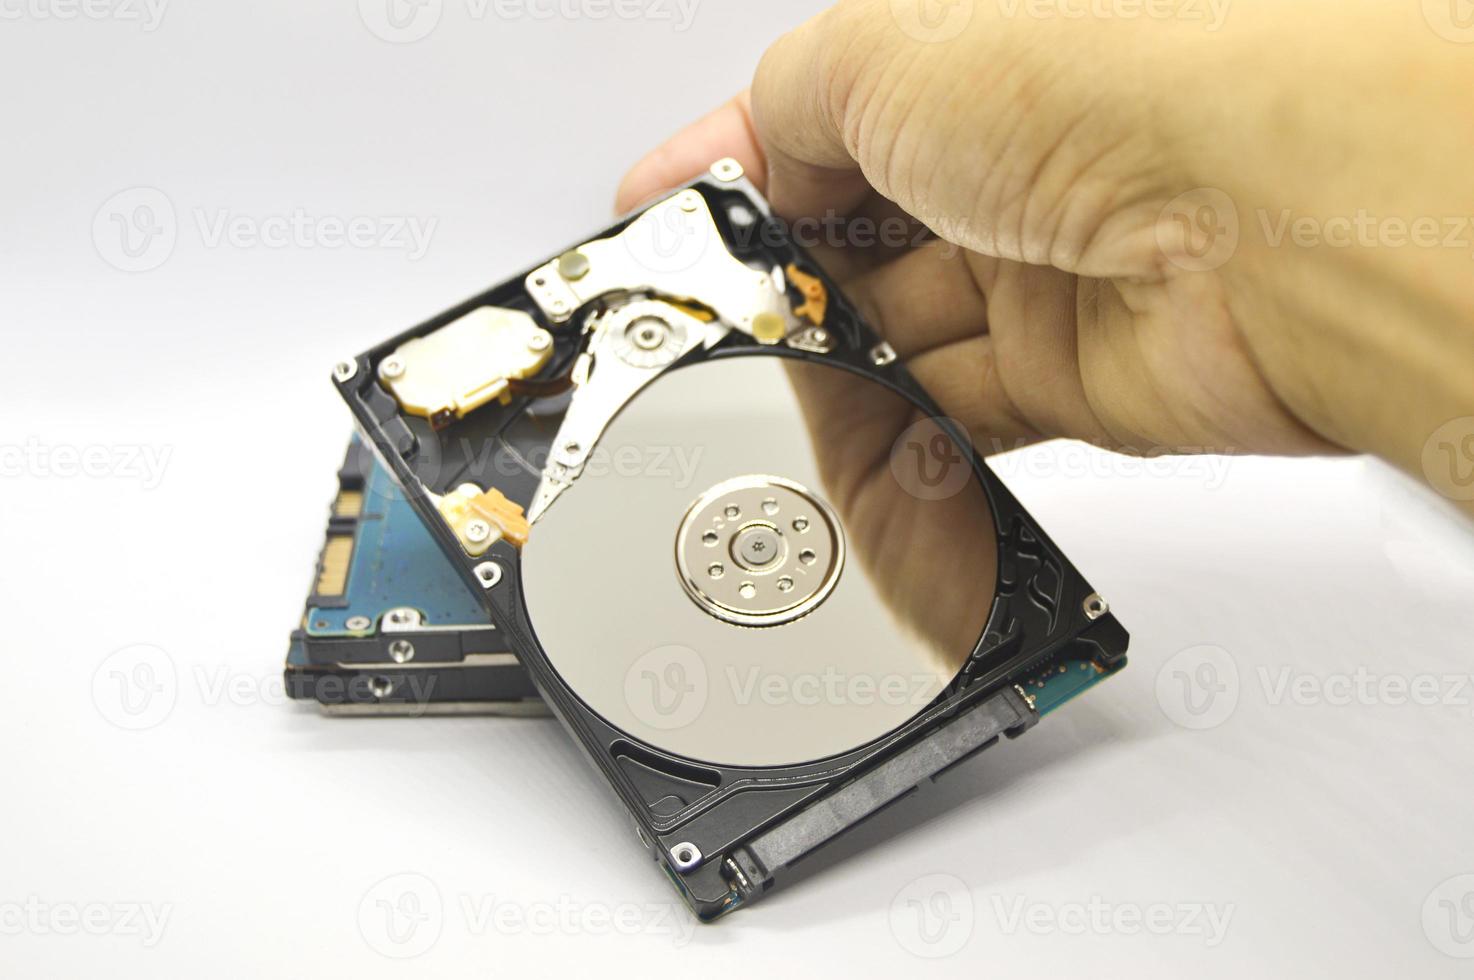 2,5-Zoll-Festplatten-Images vom Typ Spinning Disk werden heute noch häufig verwendet. foto